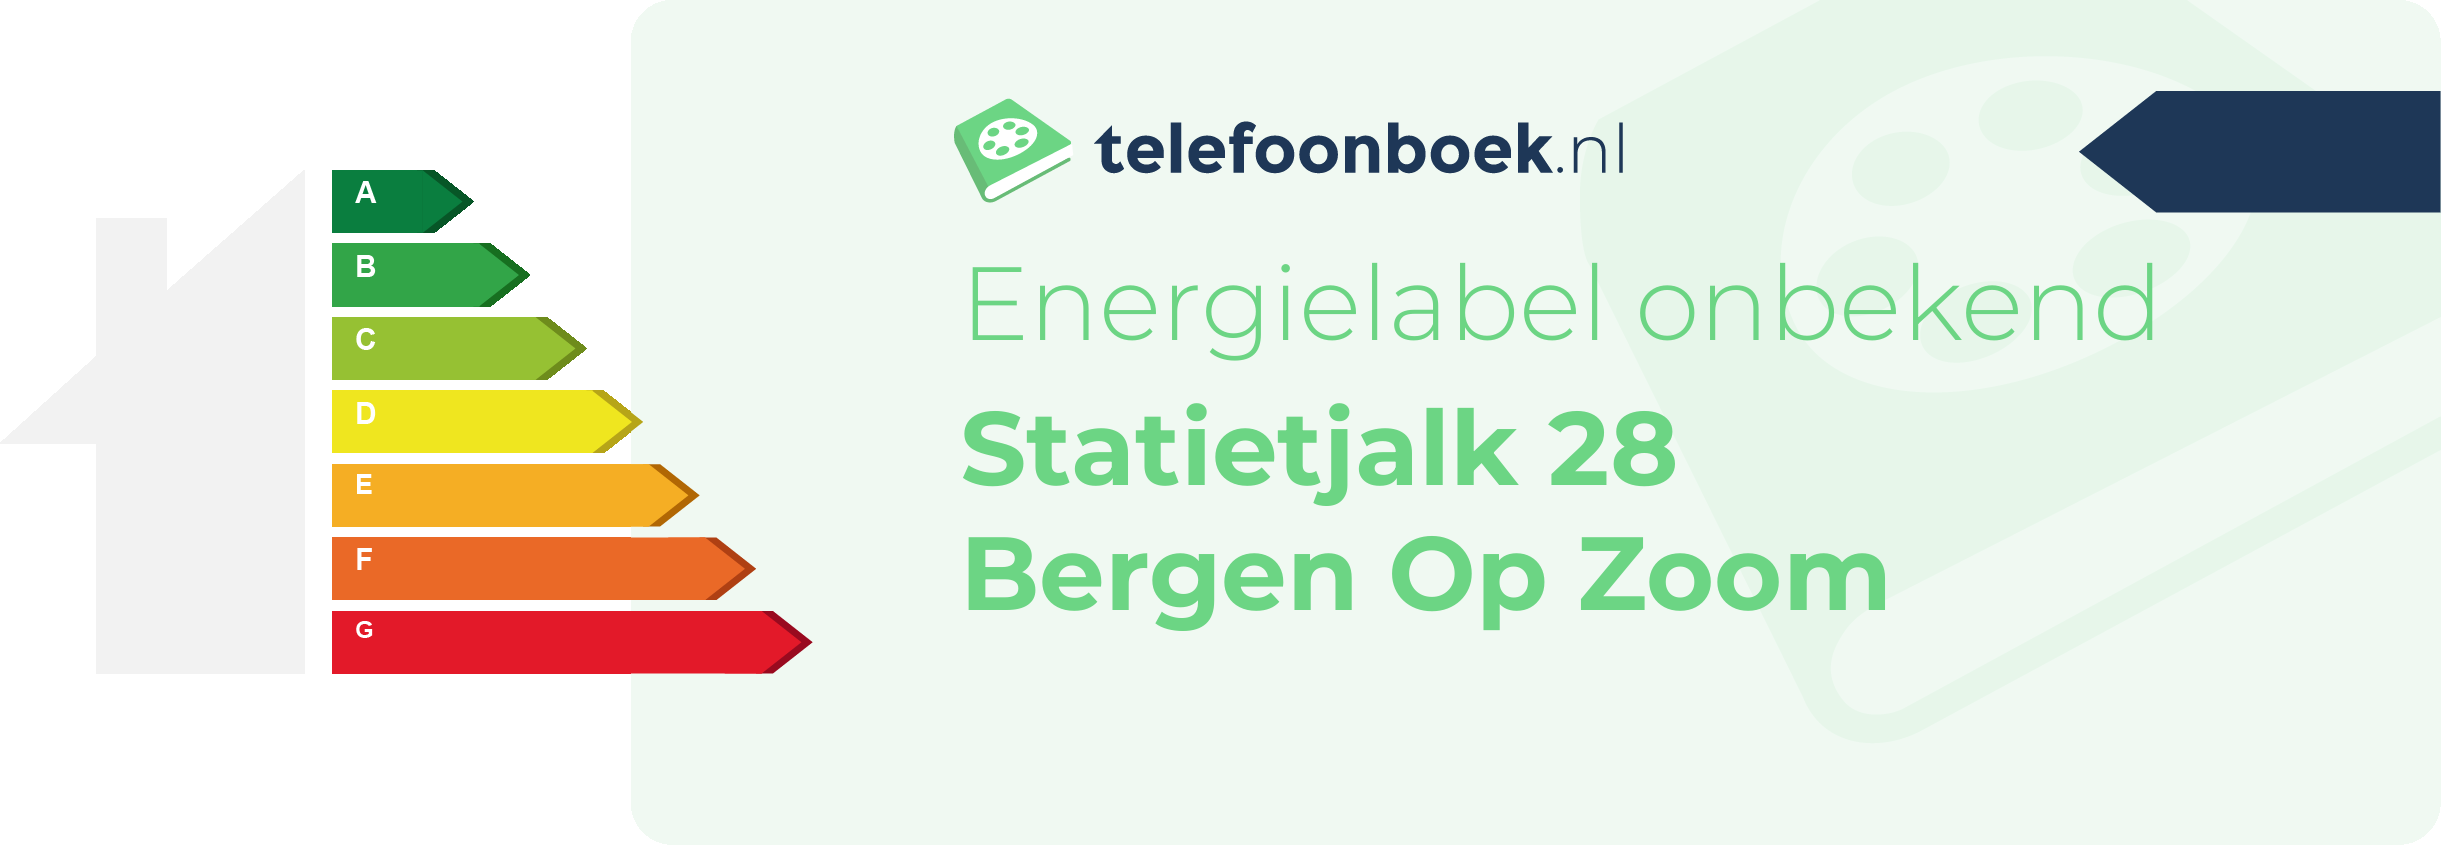 Energielabel Statietjalk 28 Bergen Op Zoom